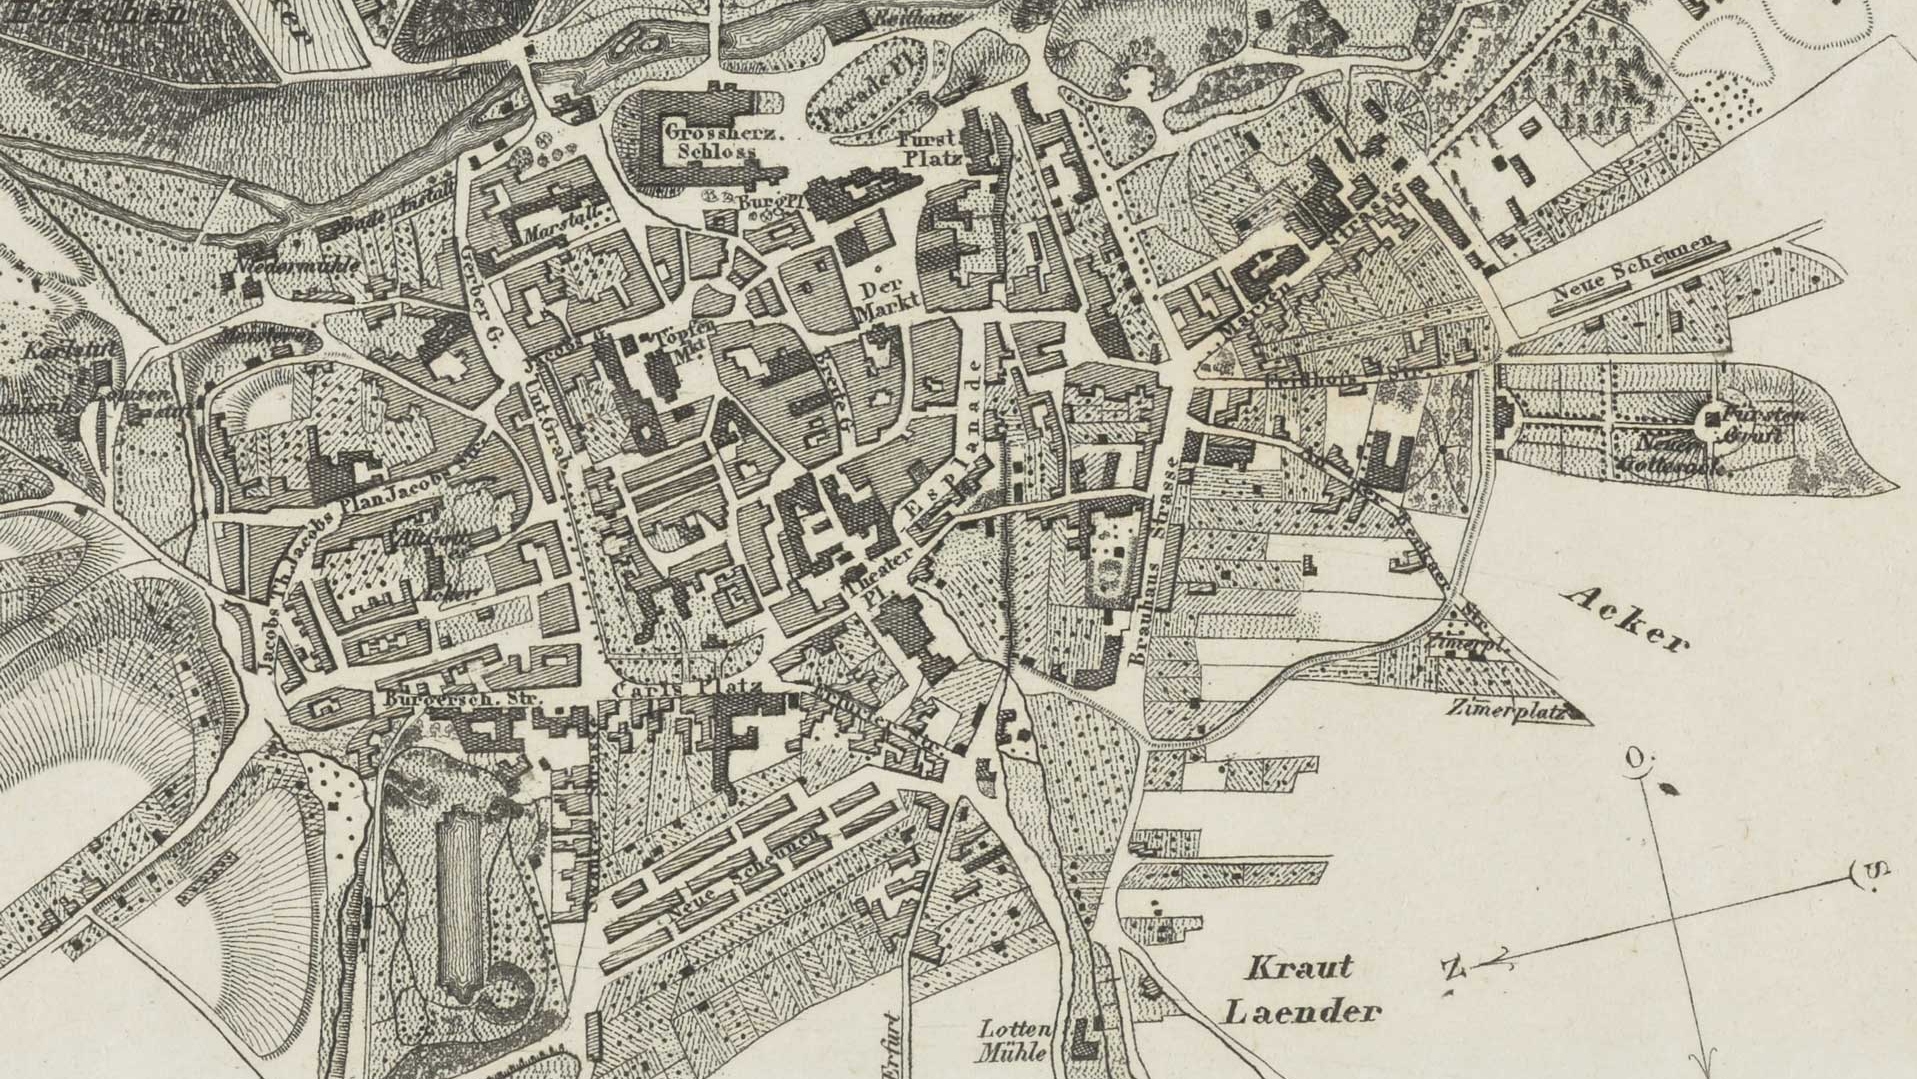 Weimar city map 1826. Source: Klassik Stiftung Weimar